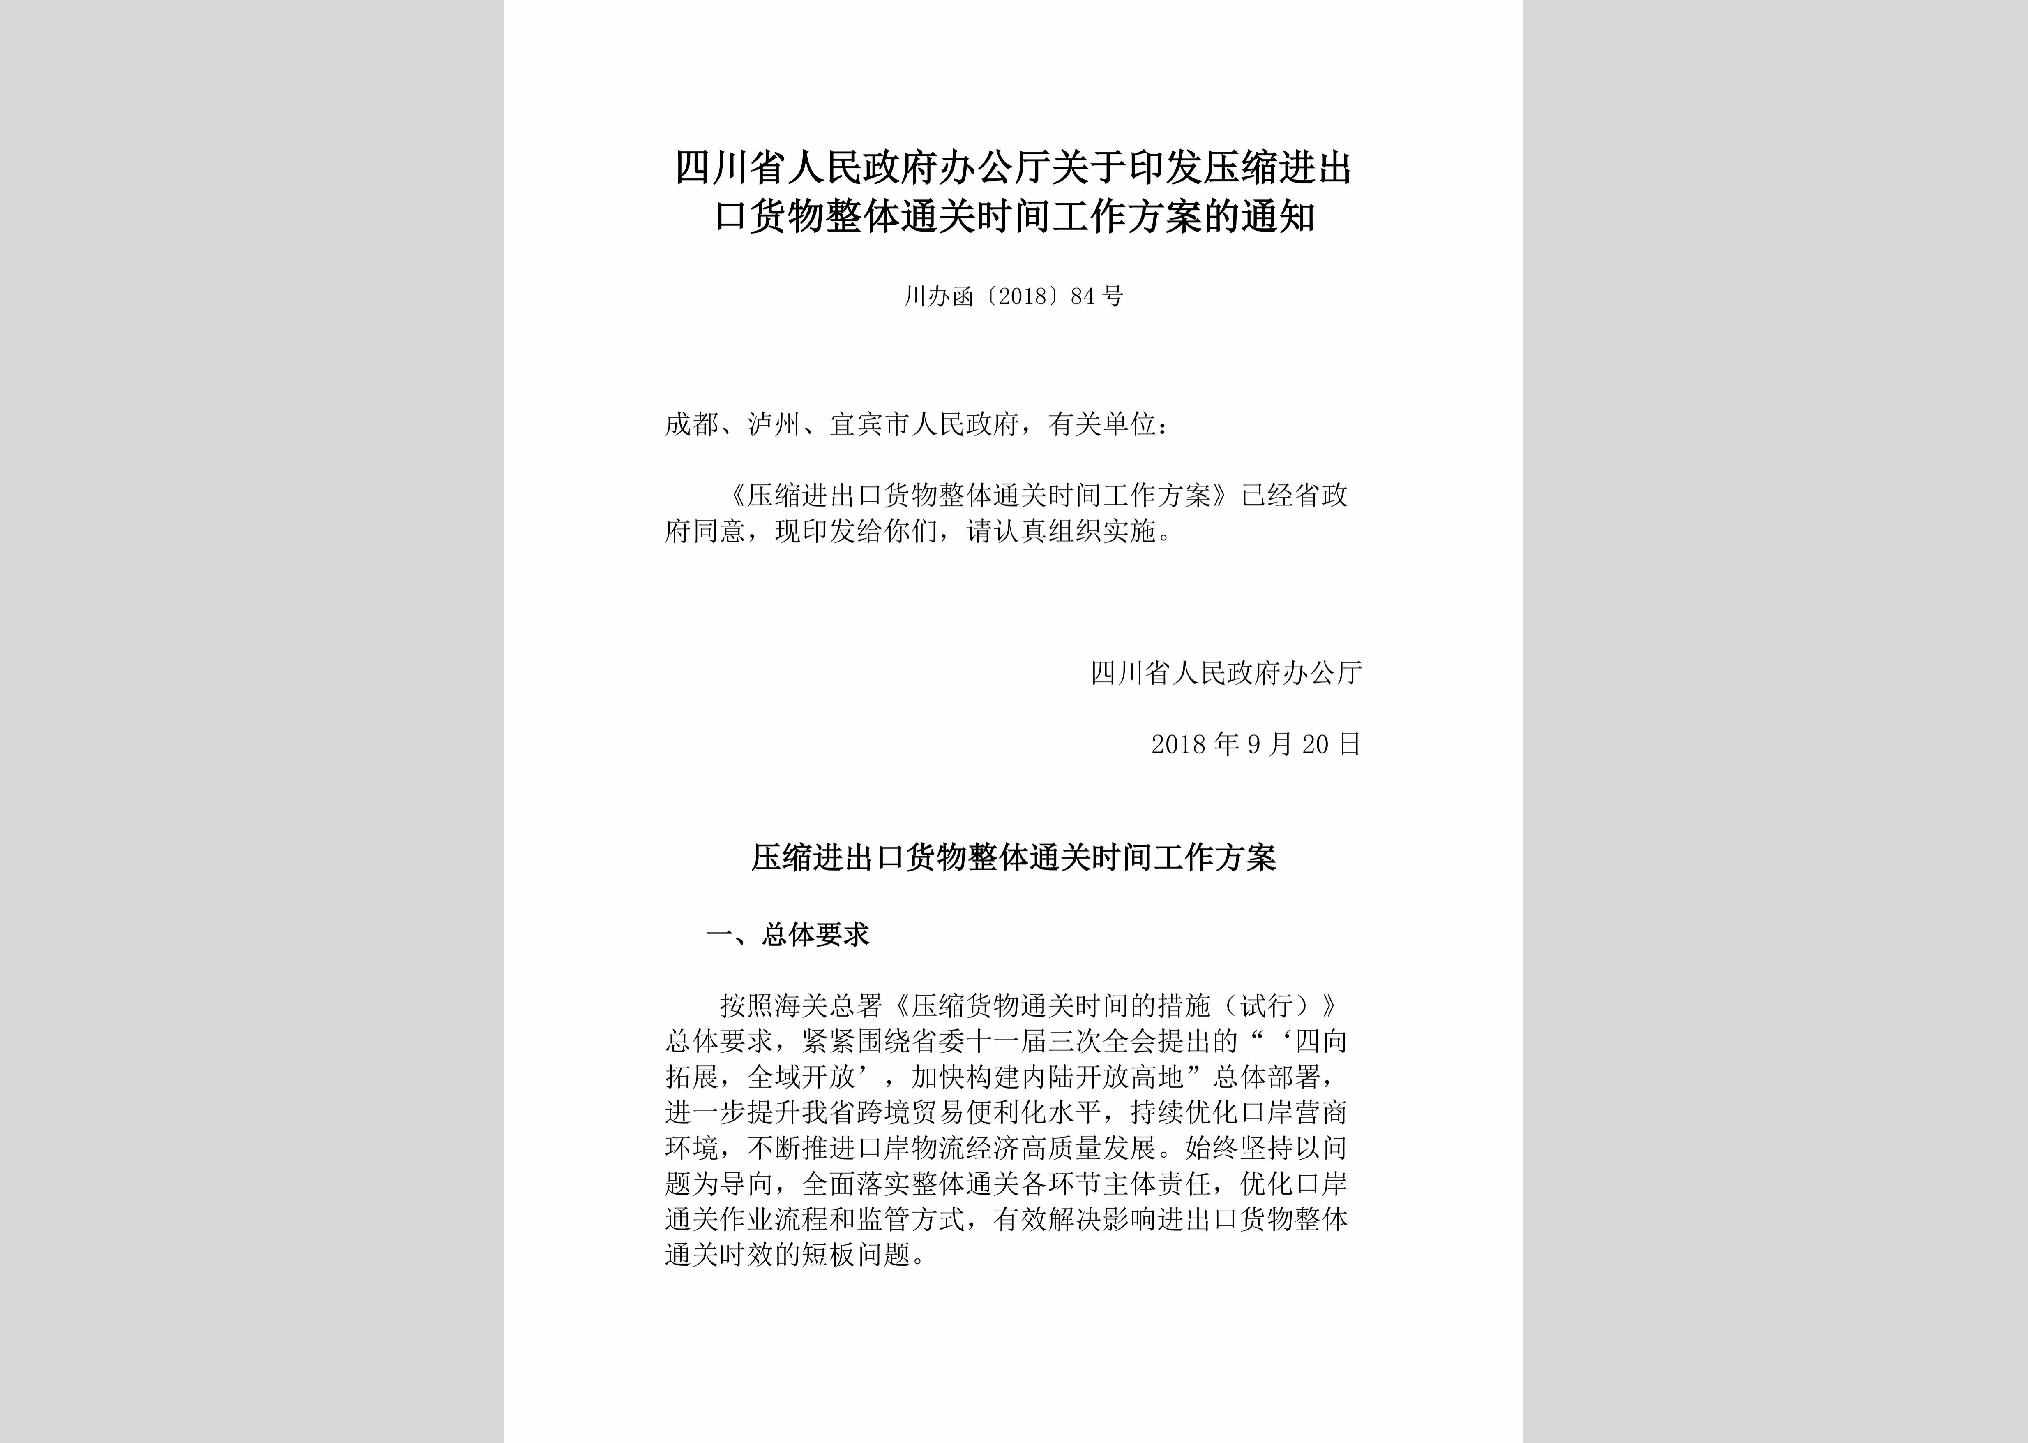 川办函[2018]84号：四川省人民政府办公厅关于印发压缩进出口货物整体通关时间工作方案的通知